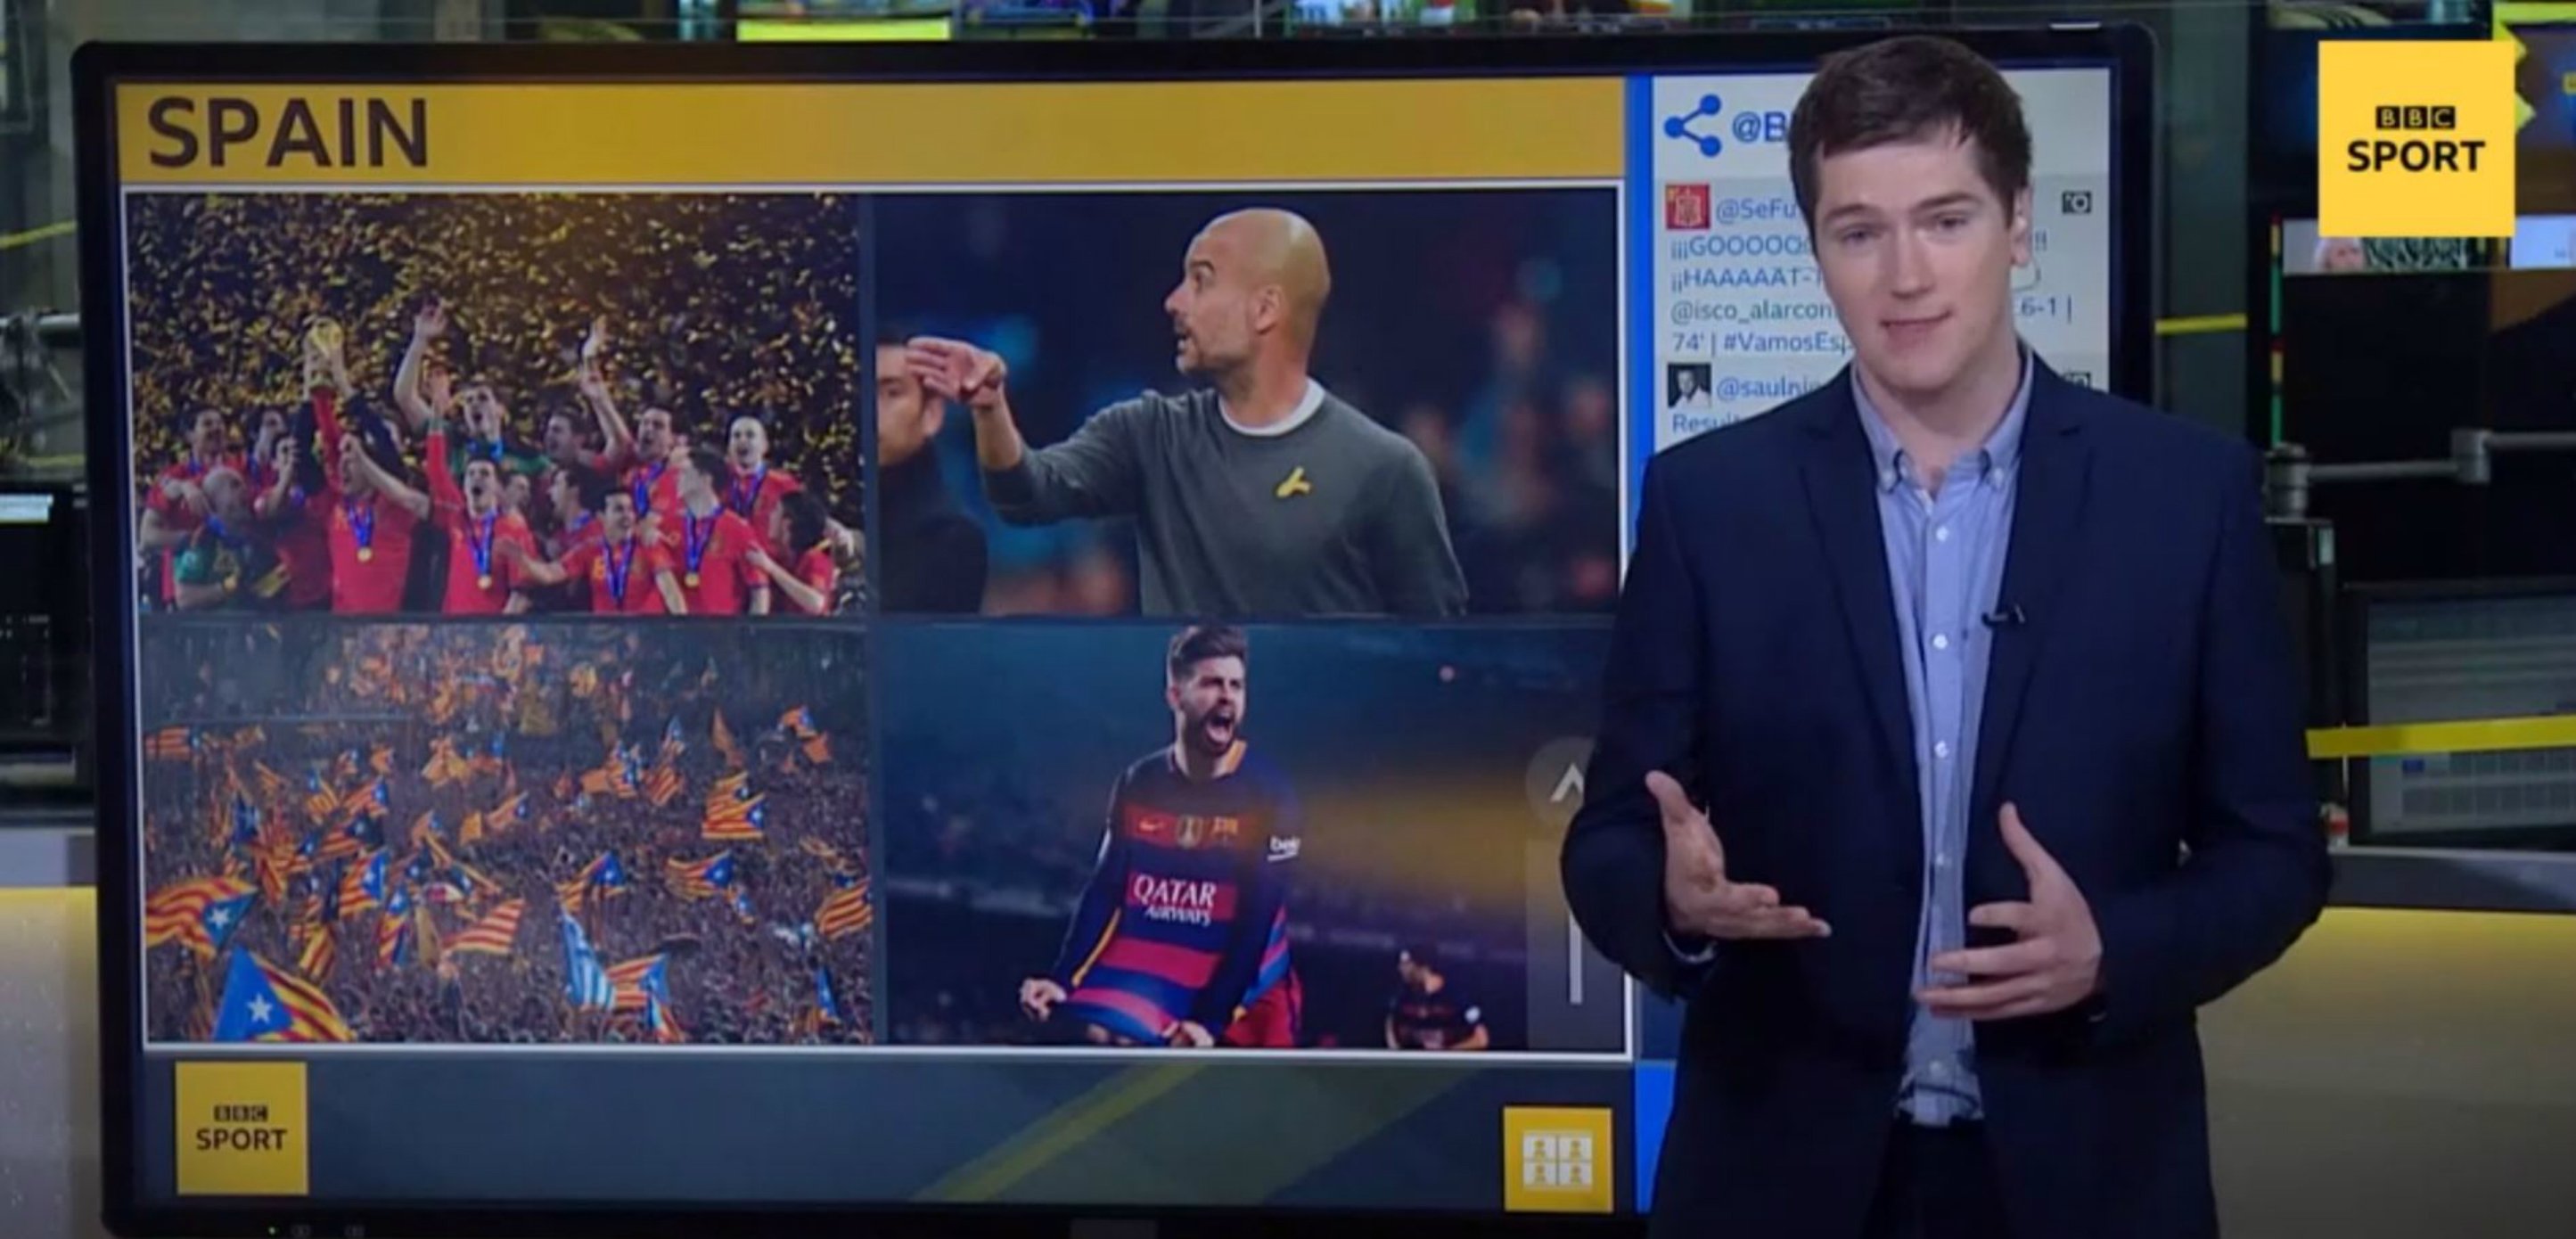 BBC: "Muchos catalanes dan apoyo a los rivales de España en el Mundial"